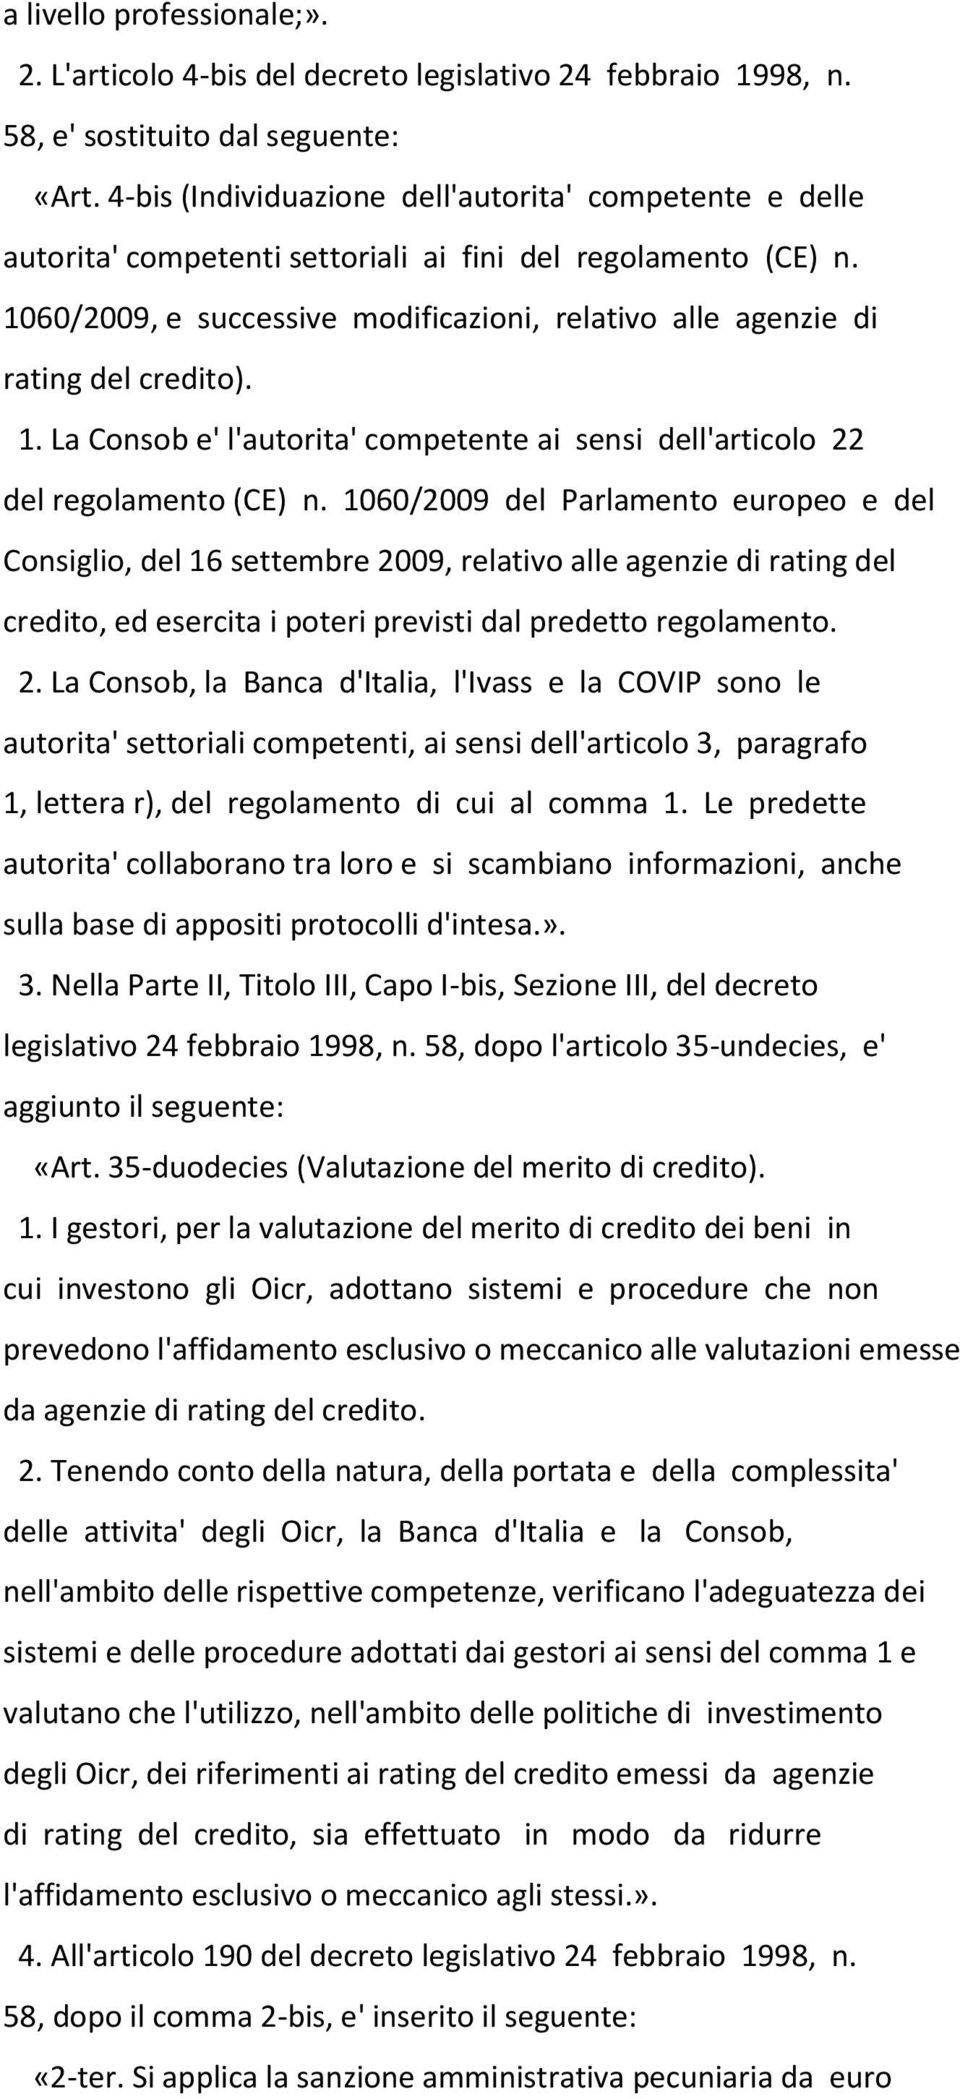 1060/2009, e successive modificazioni, relativo alle agenzie di rating del credito). 1. La Consob e' l'autorita' competente ai sensi dell'articolo 22 del regolamento (CE) n.